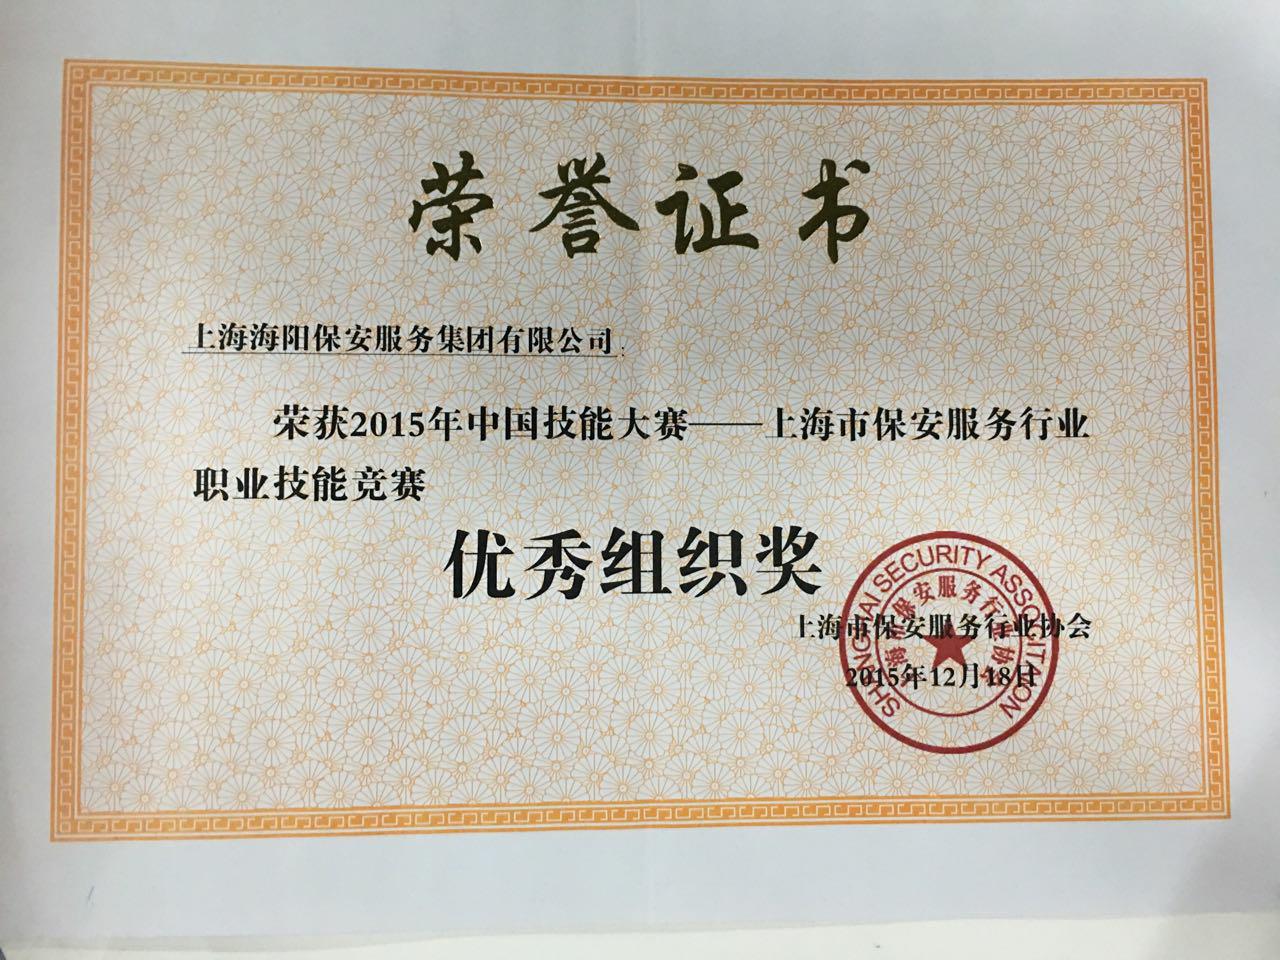 2015年度上海海阳保安服务集团公司优秀组织奖.jpg